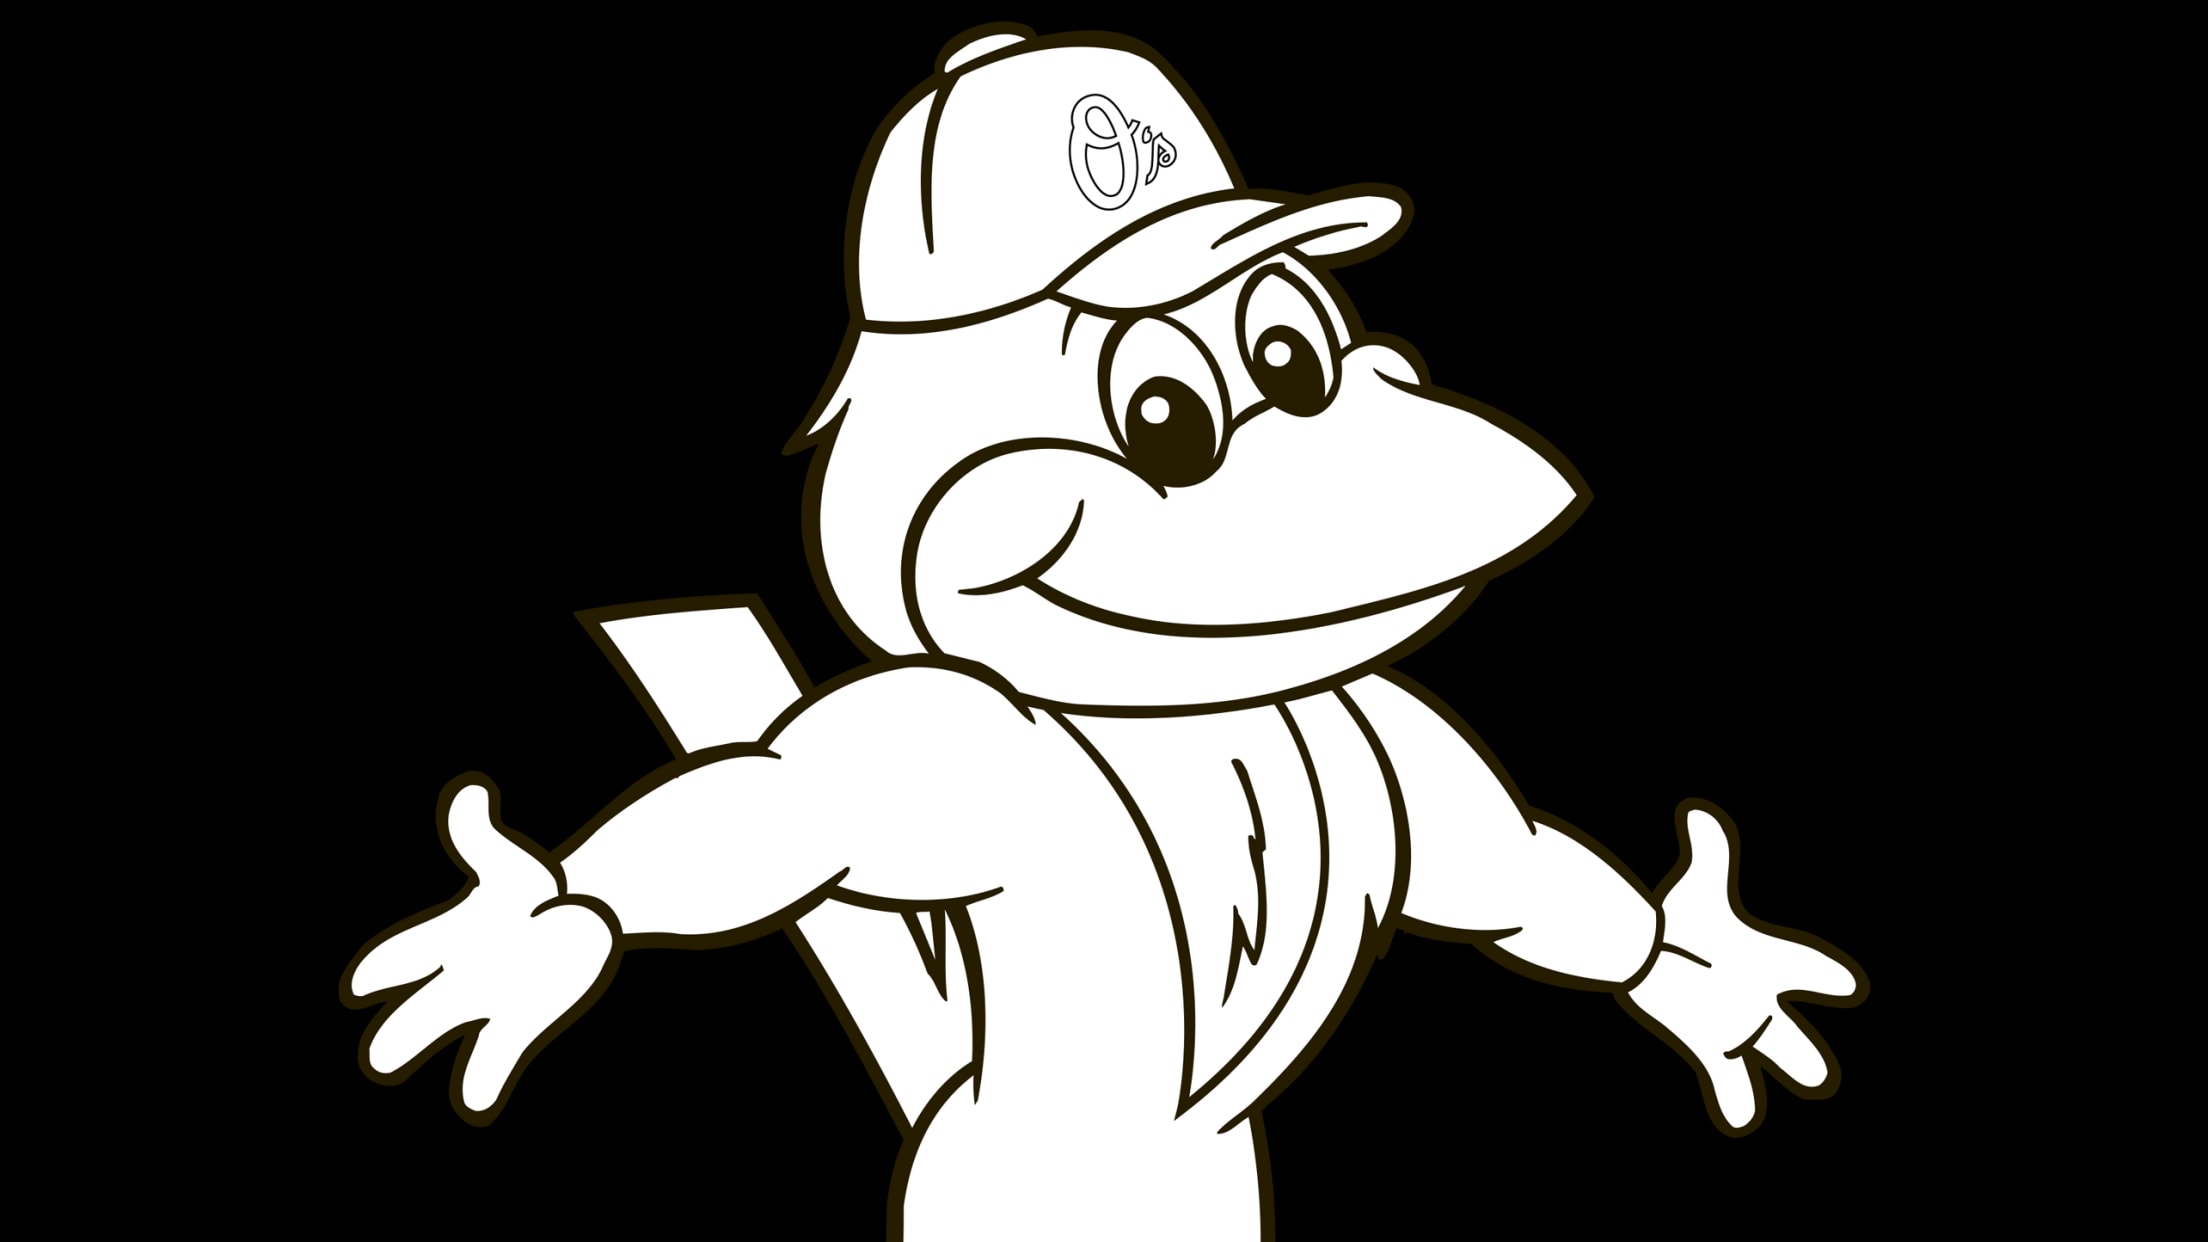 Baltimore Orioles: The Oriole Bird 2021 Mascot - Officially